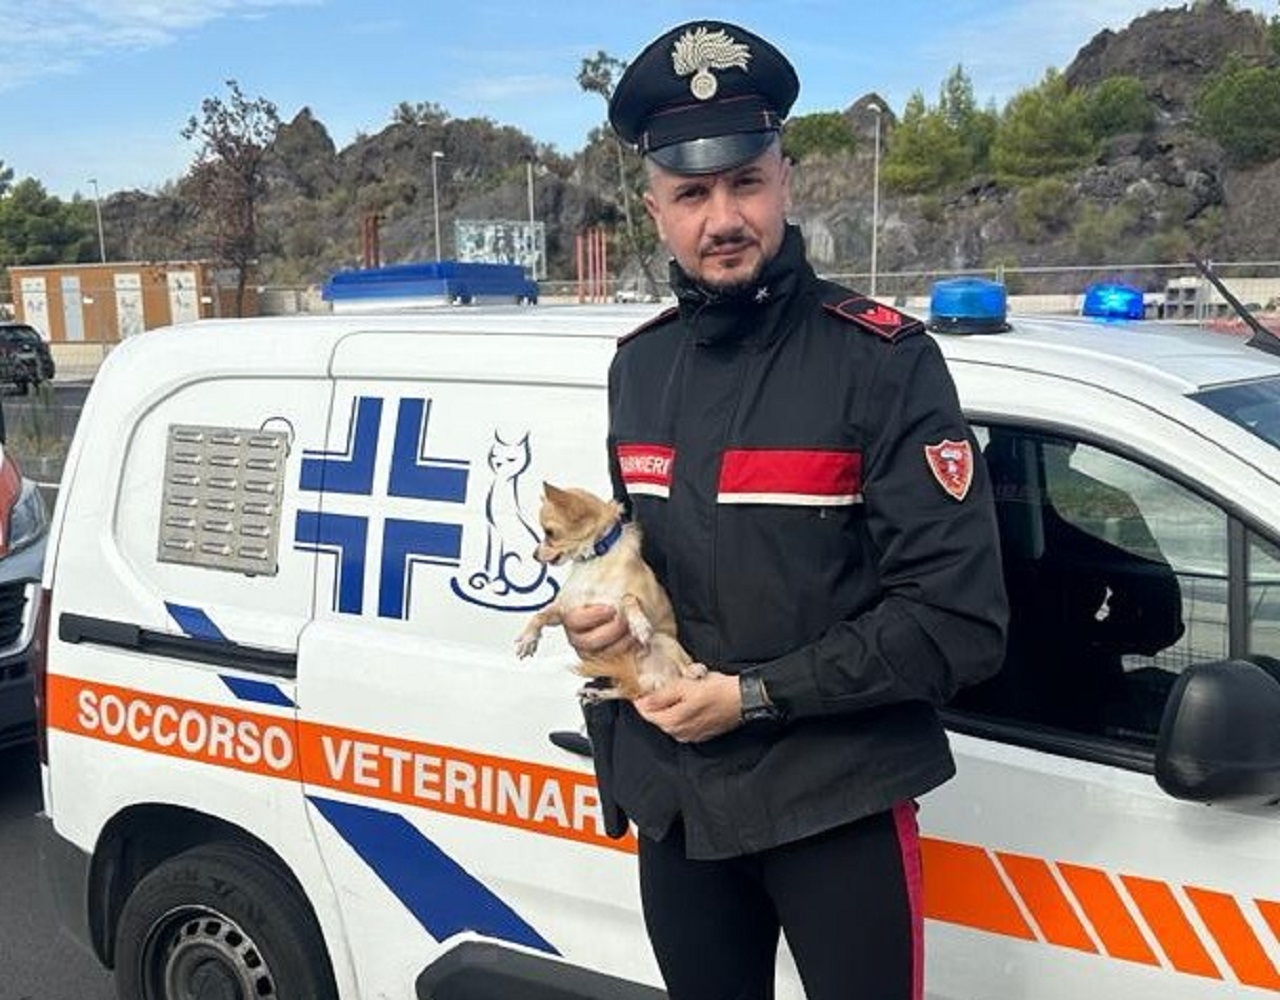 Storia a lieto fine per “Ciccino”, piccolo Chihuahua salvato dai carabinieri a Catania